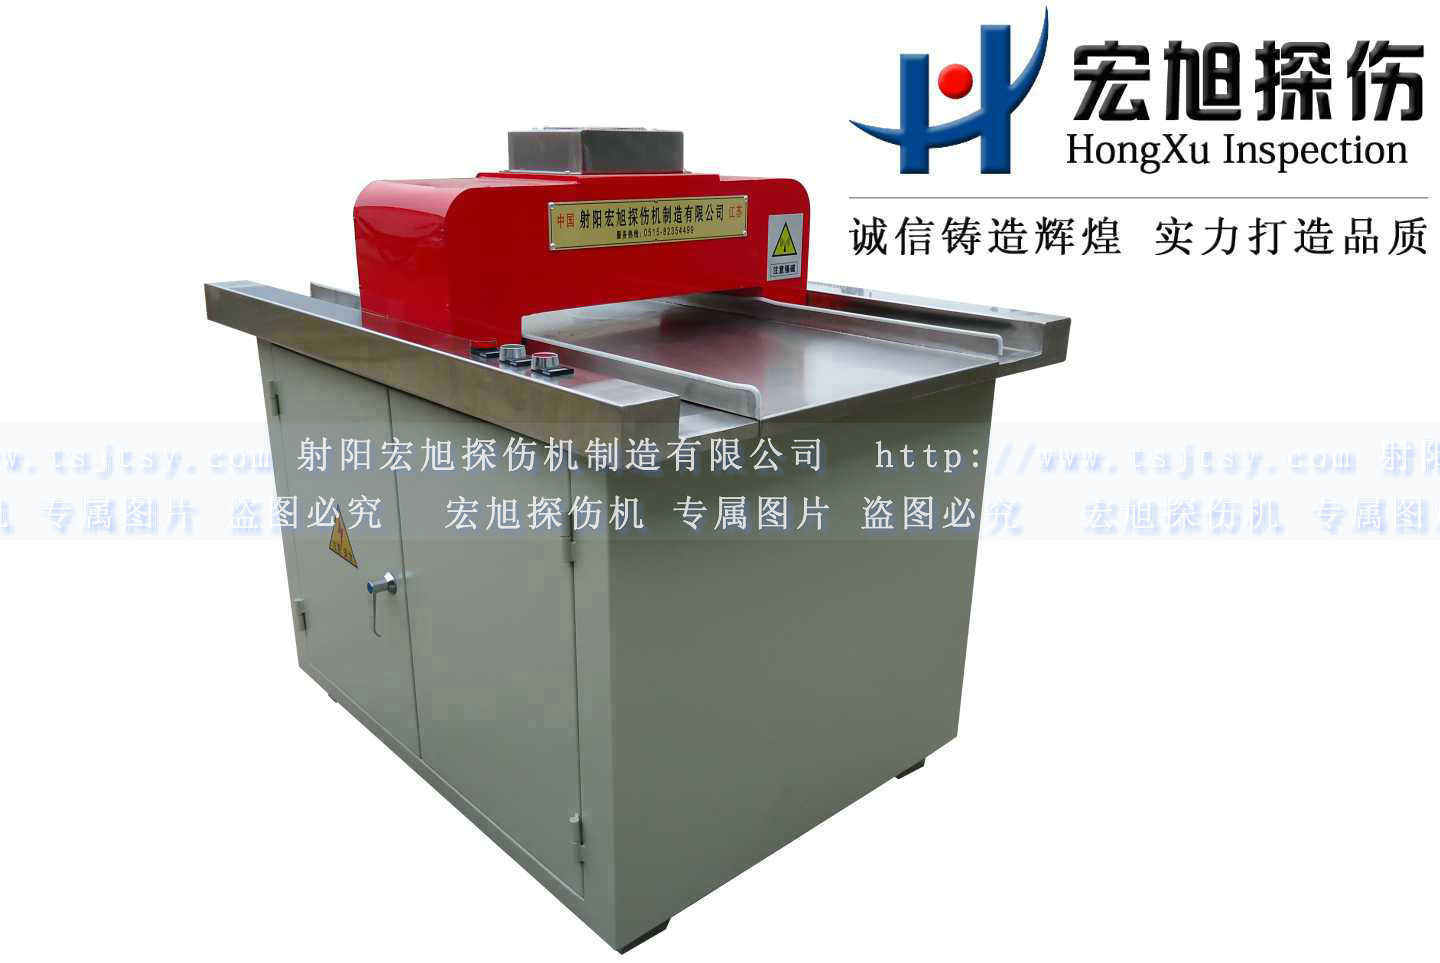 产品名称：微型充退磁机
产品型号：HCTD-250
产品规格：1000mm*800mm*1200mm